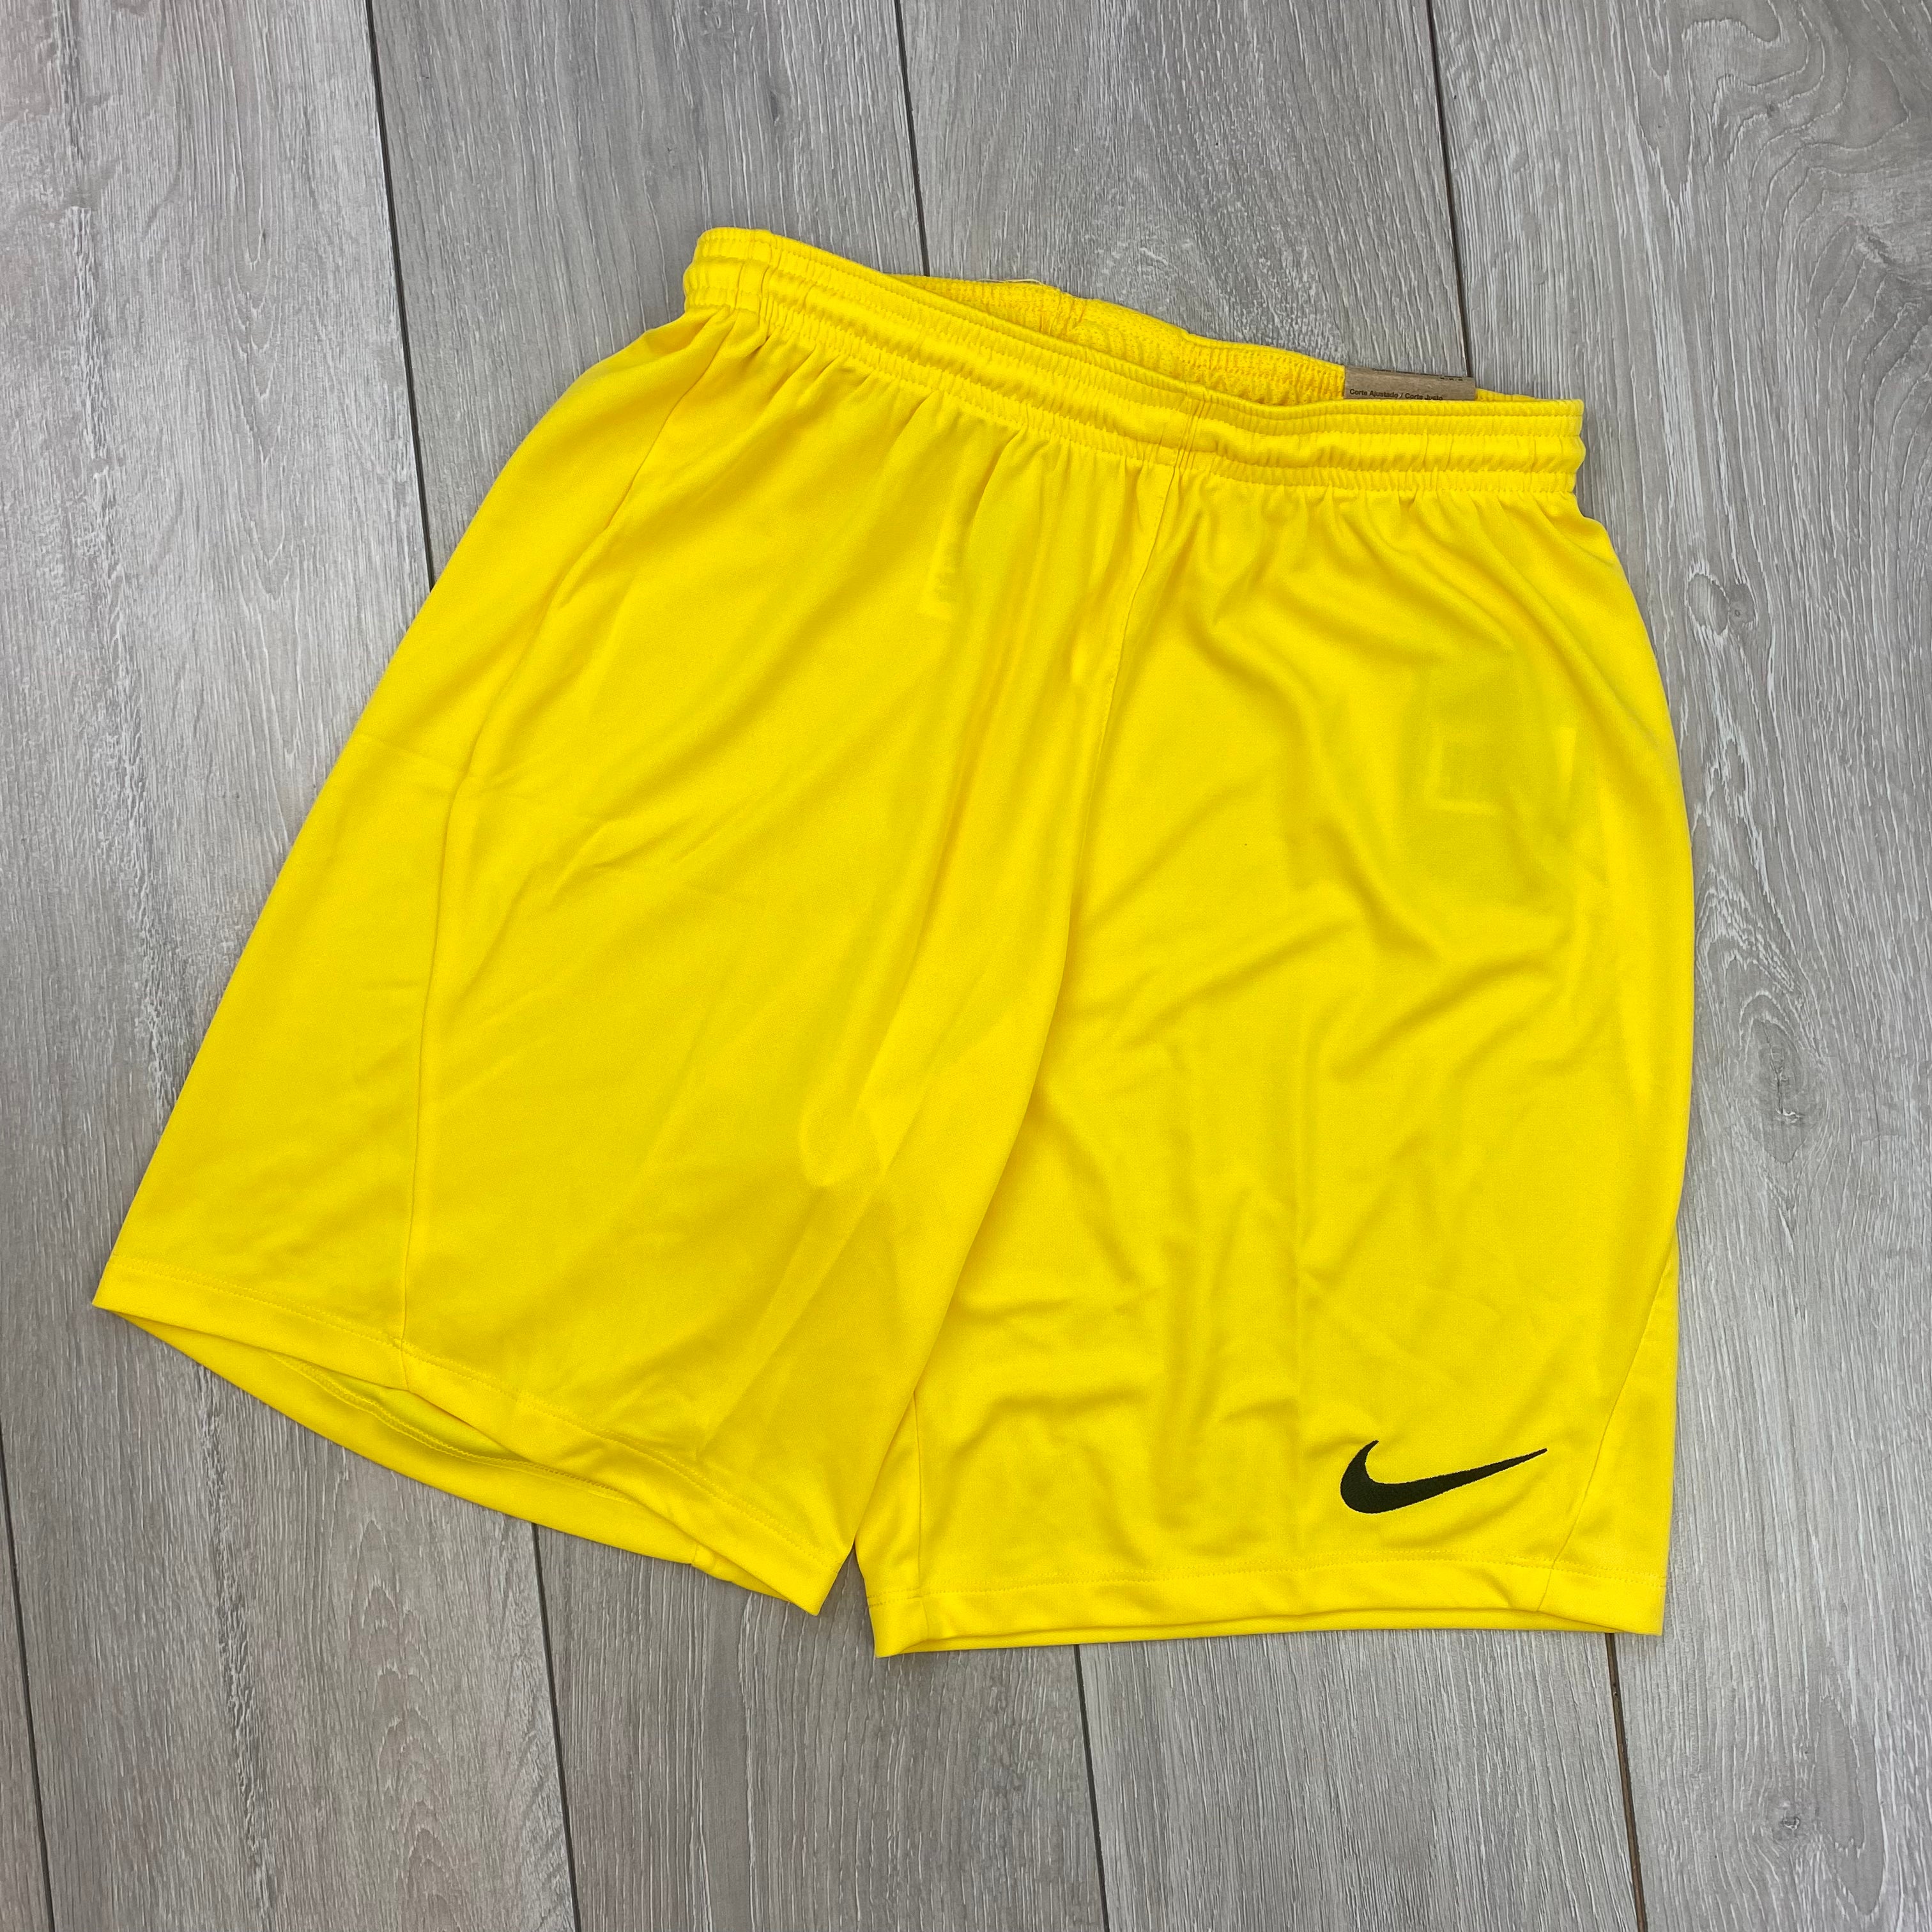 Nike Dri-Fit Shorts - Yellow